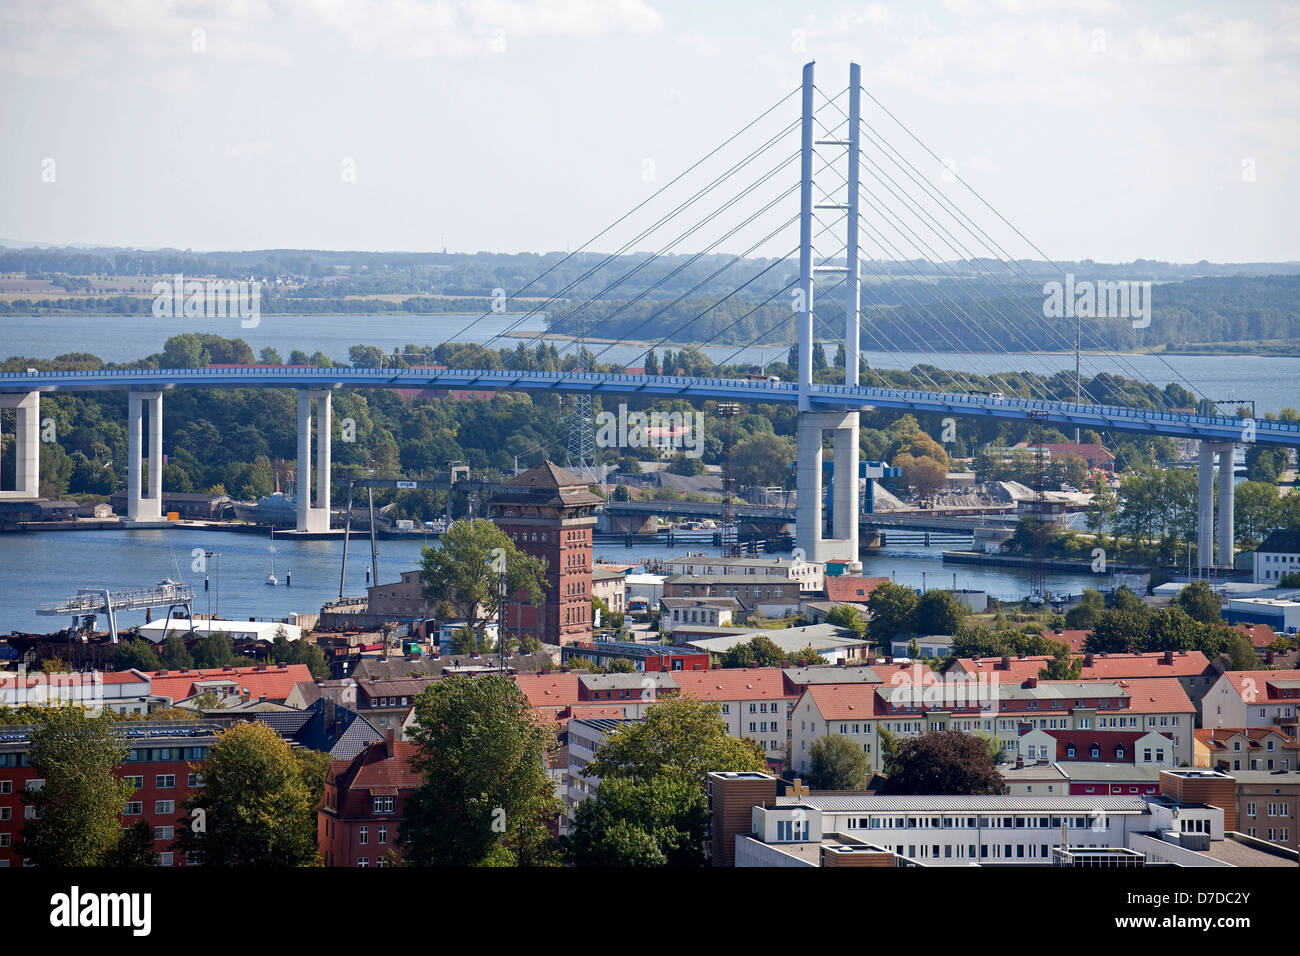 Ruegen Bridge, Hanseatic City of Stralsund, Mecklenburg-Vorpommern, Germany Stock Photo